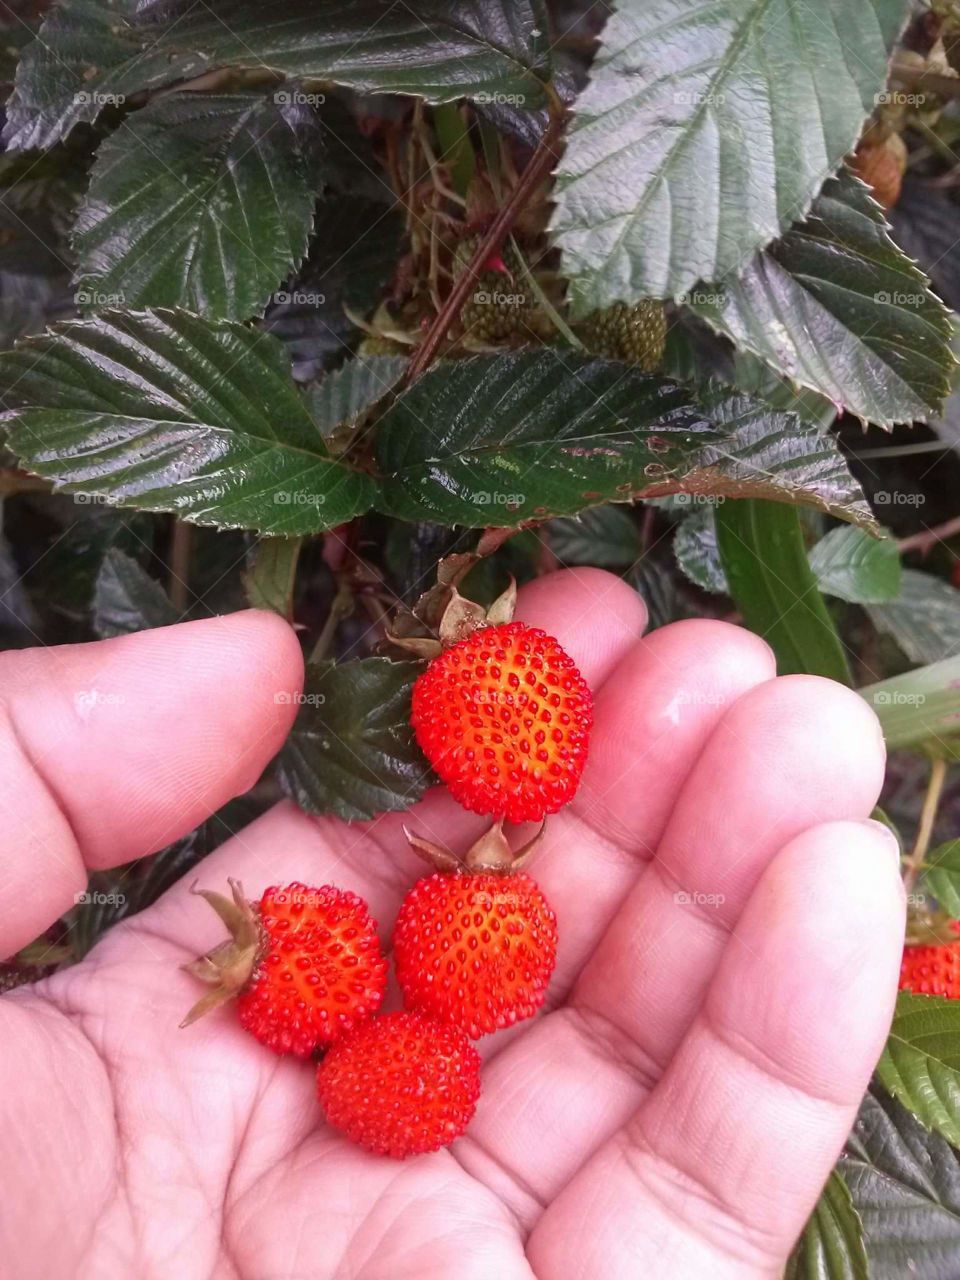 wild berries